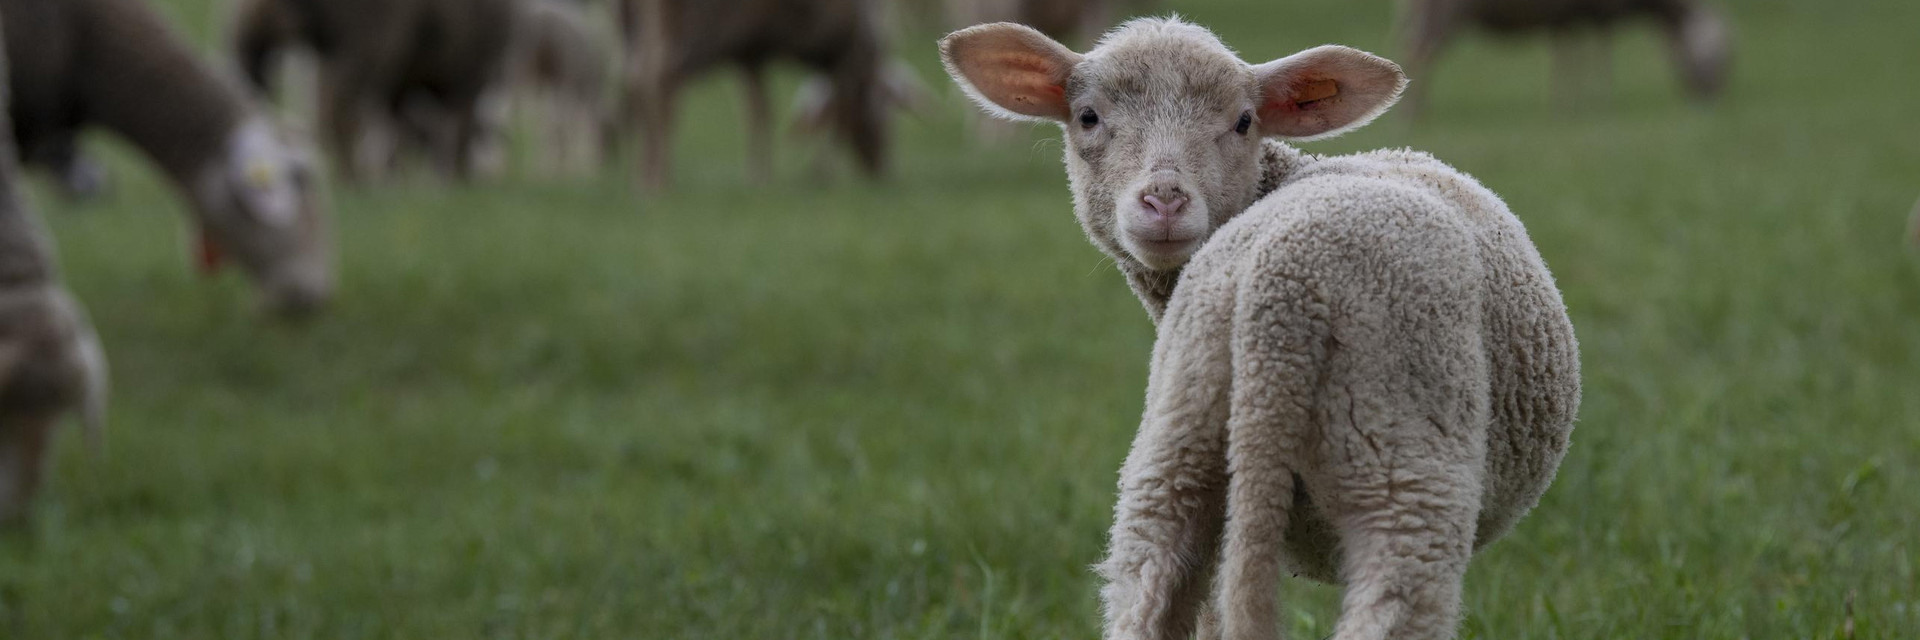 Wolle mit Po - VIER PFOTEN Stiftung für Tierschutz in Deutschland